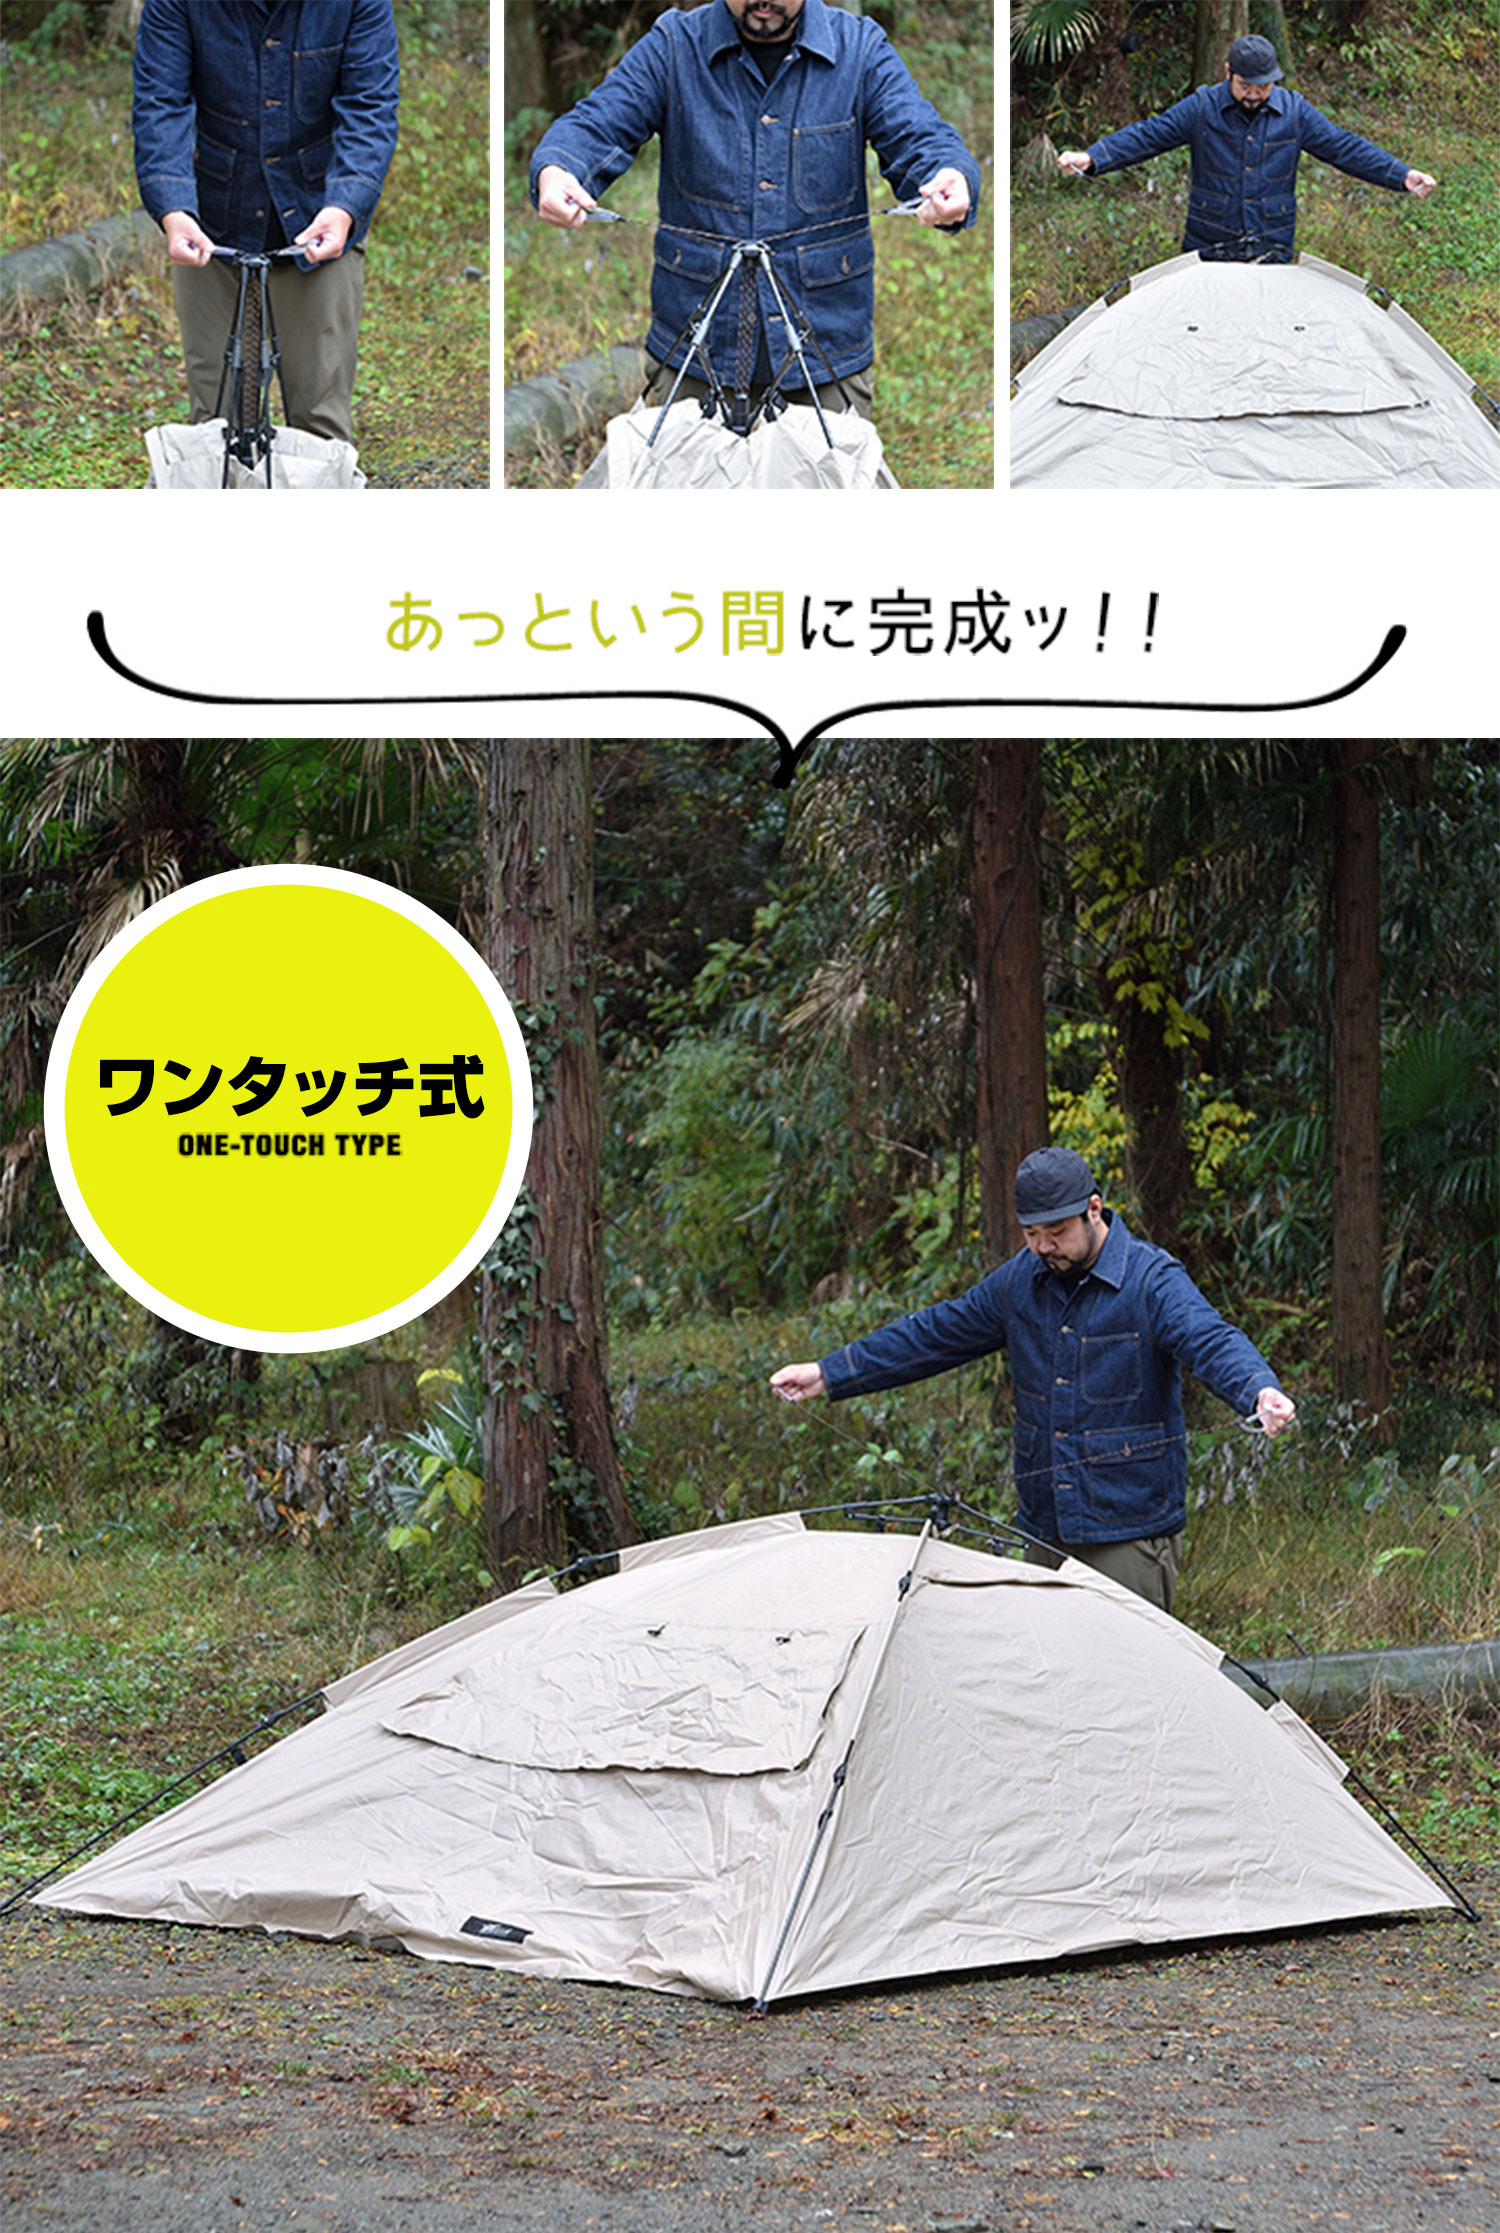 新作販売 FIELDOOR One-Touch Tarp Tent Portable snycoalition.org